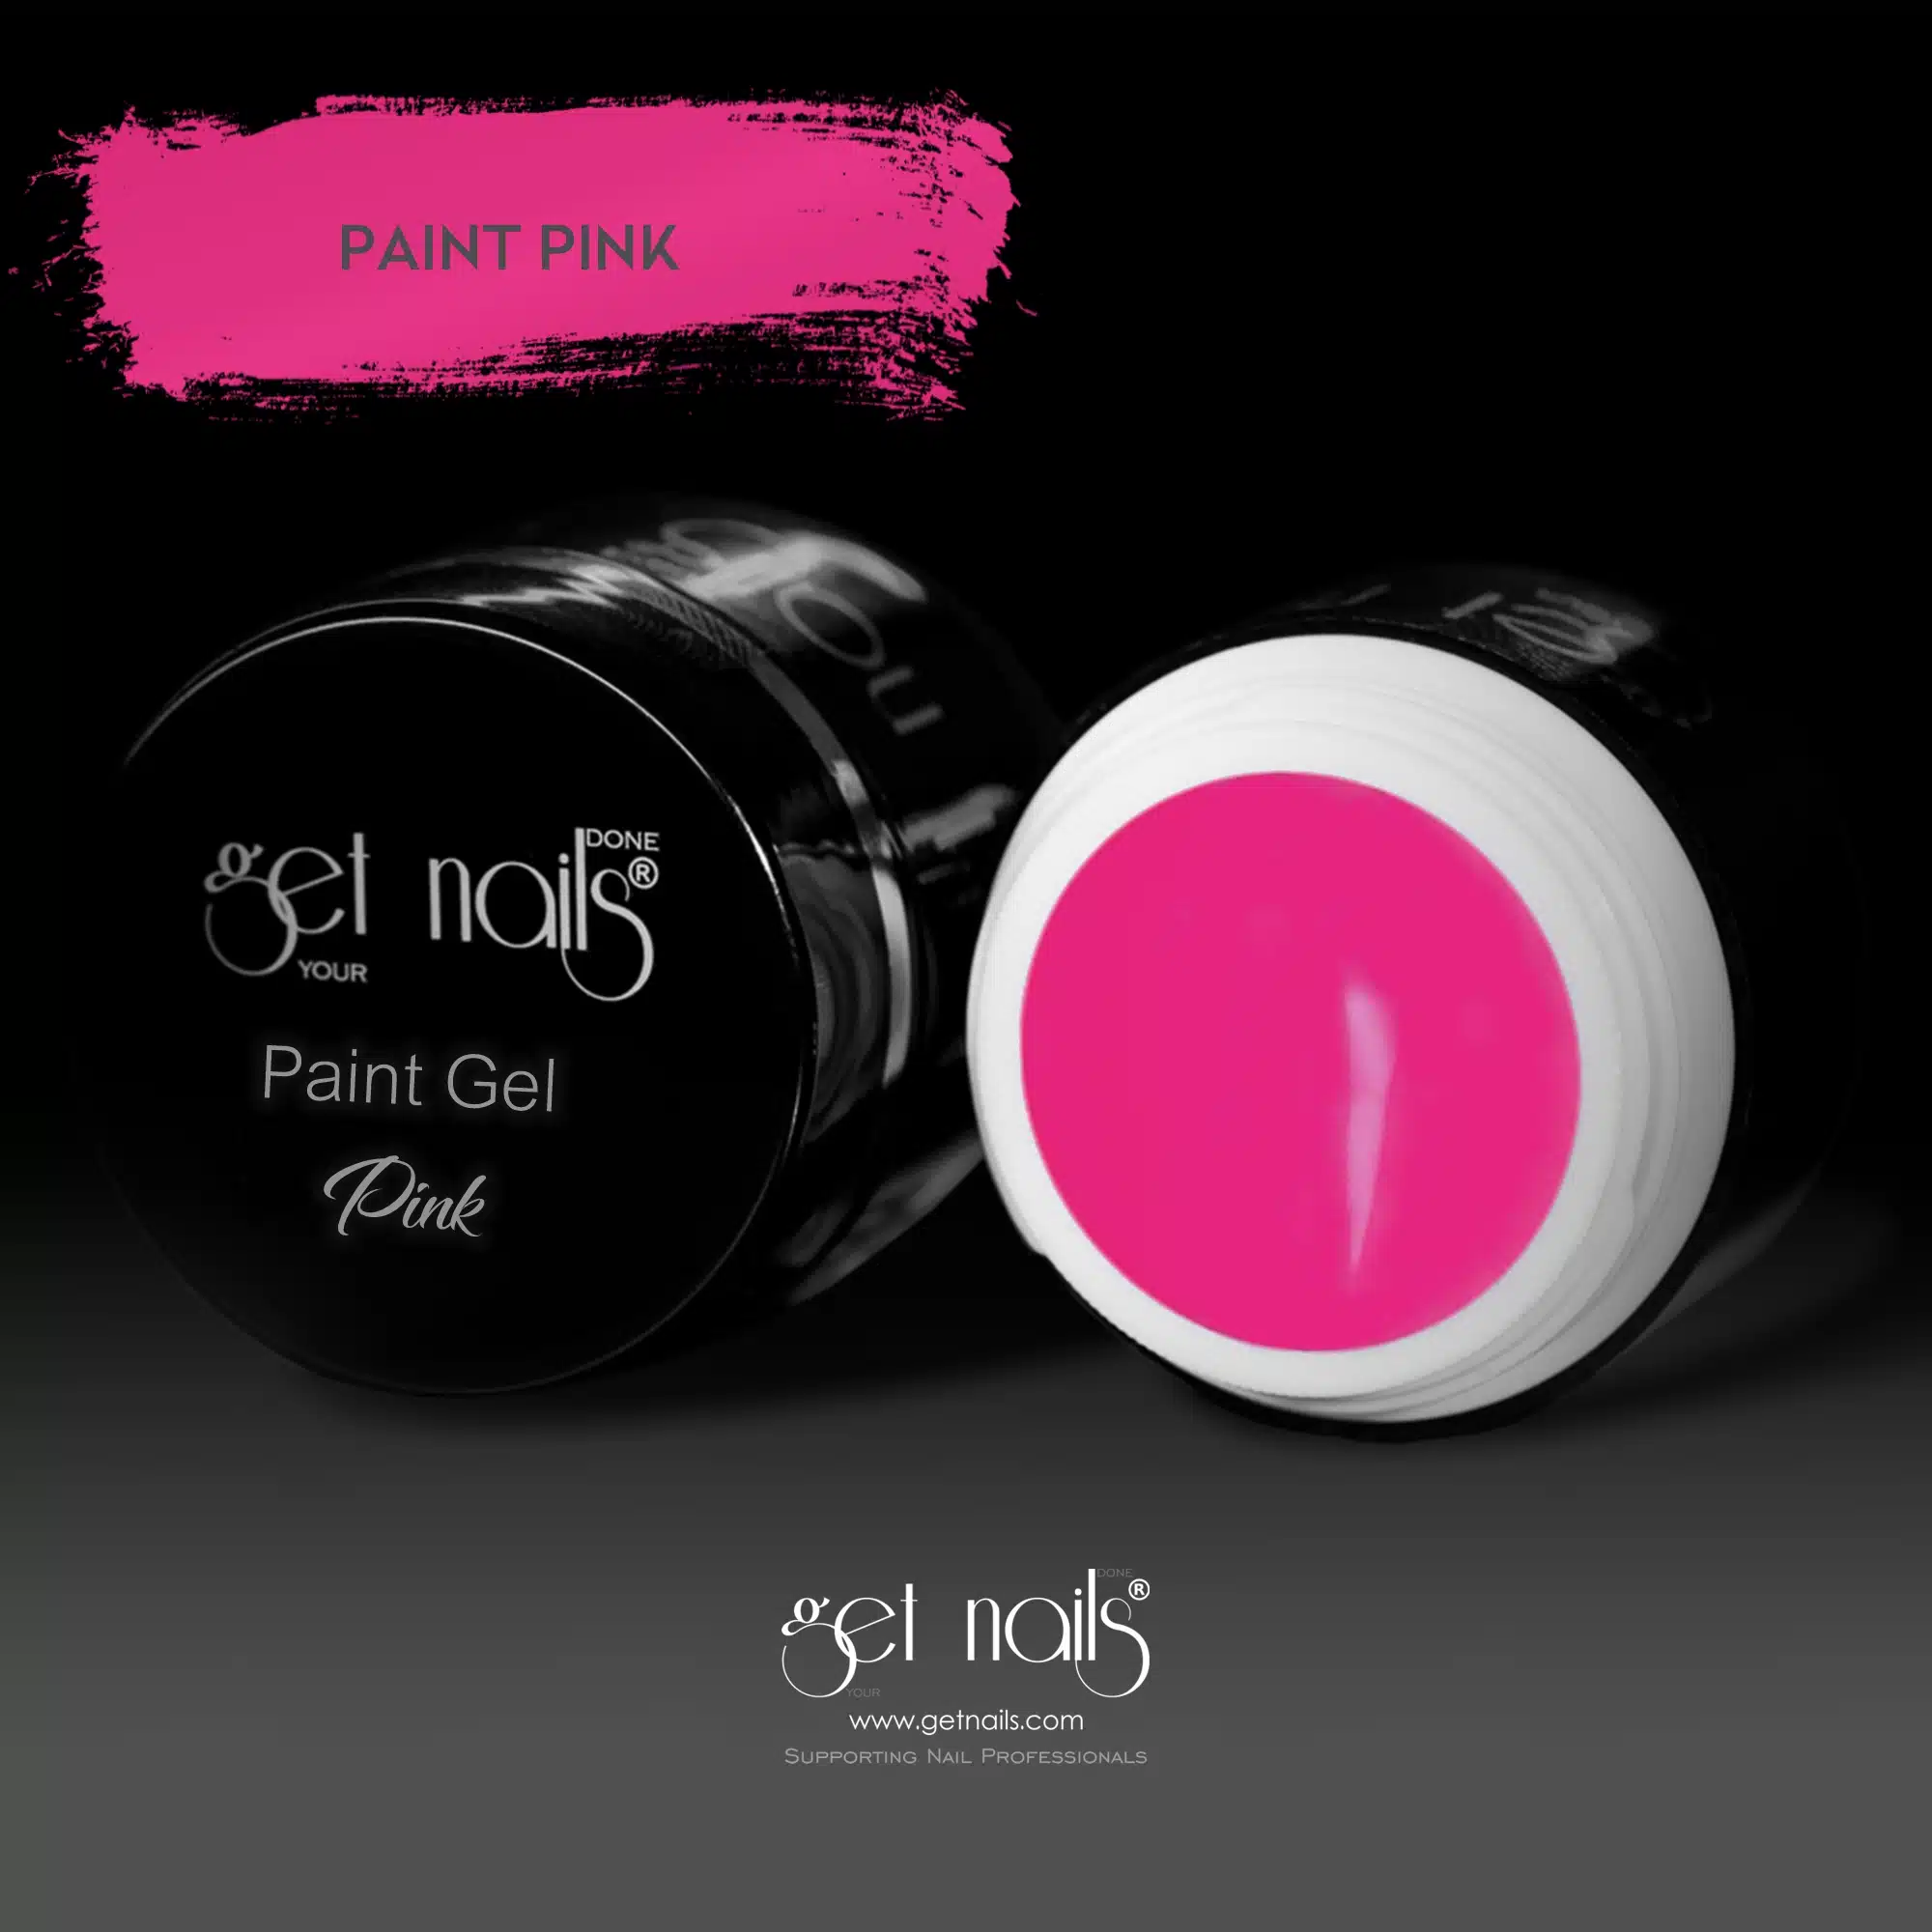 Get Nails Austria - Paint Gel Pink 5g